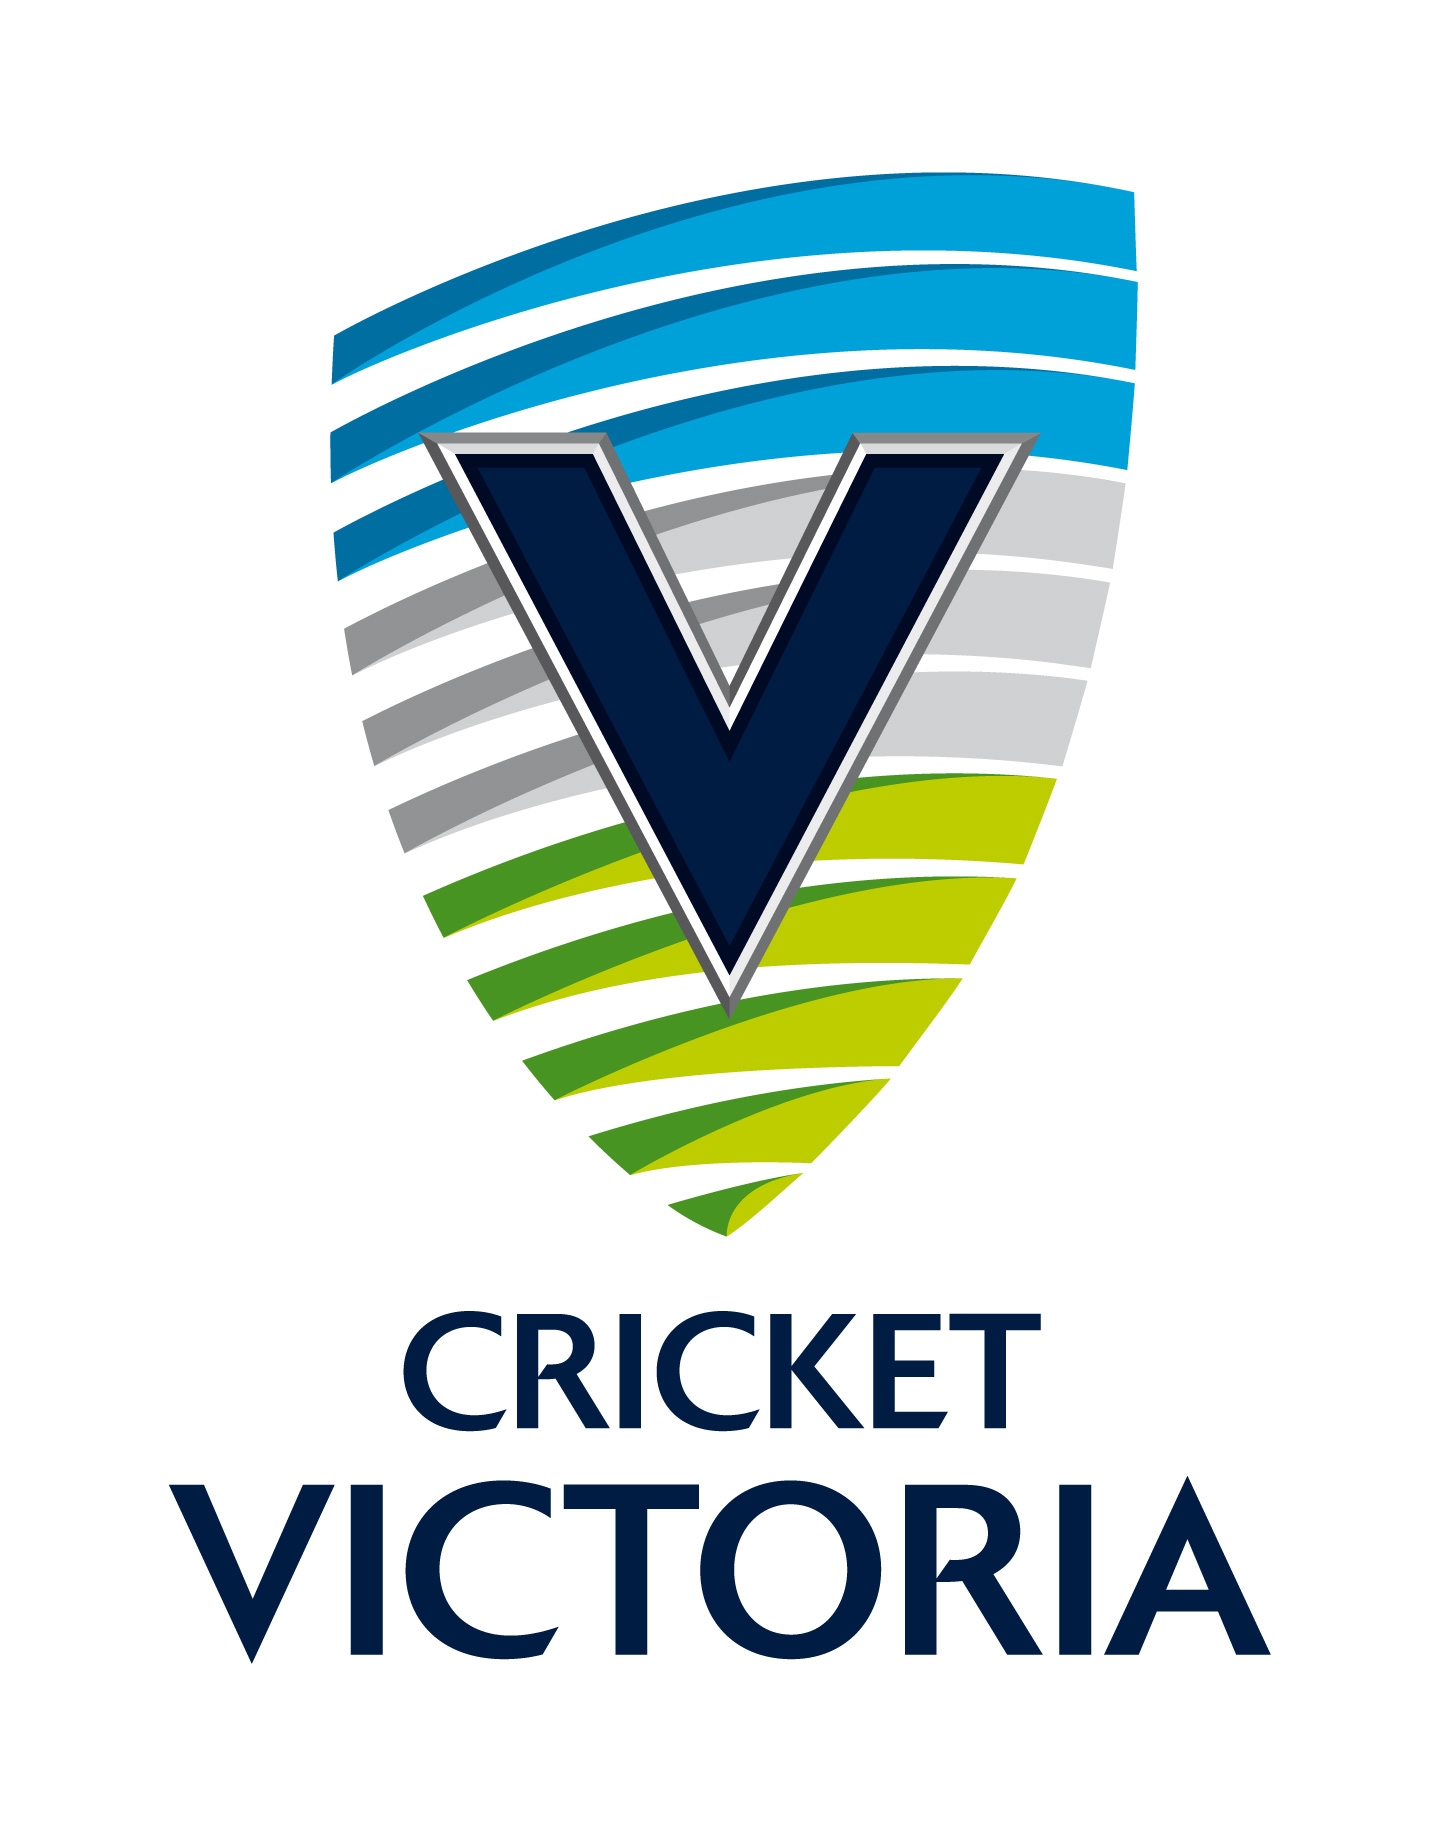 Cricket Victoria logo (New as at October 2010).JPG